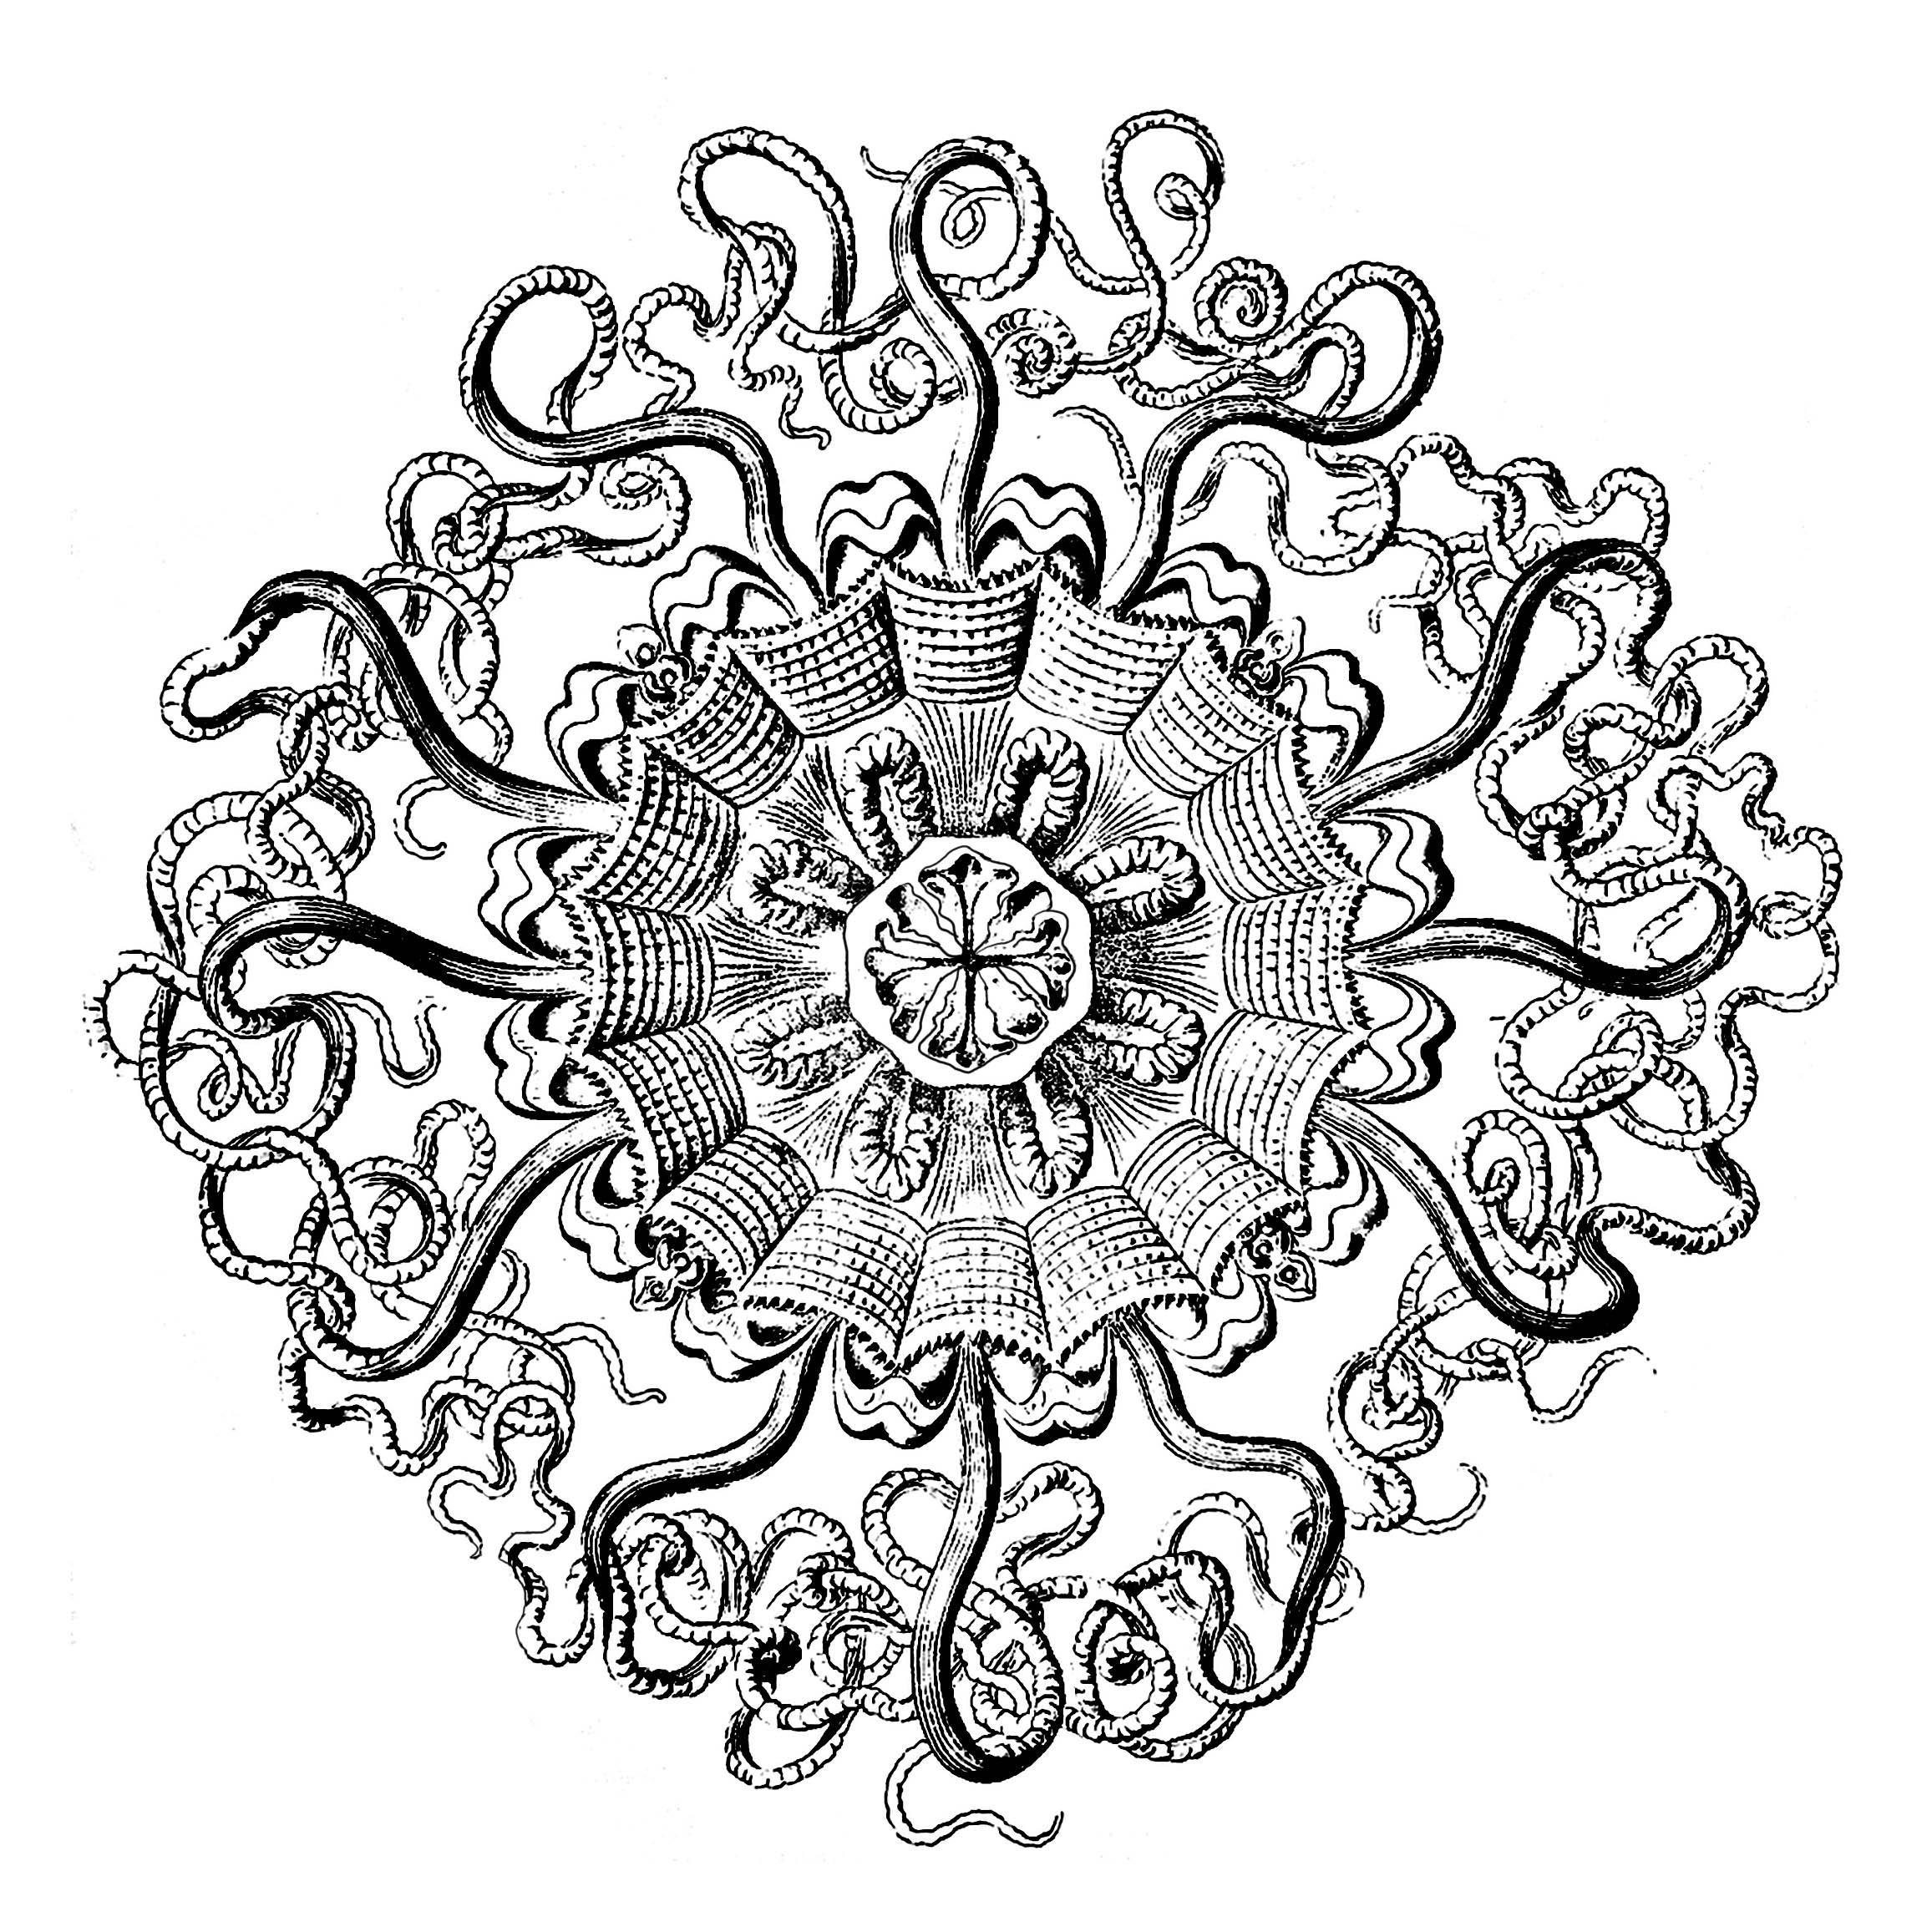 Uma Mandala exclusiva criada a partir de uma placa anatómica de medusa do século XVIII (Permedusae)